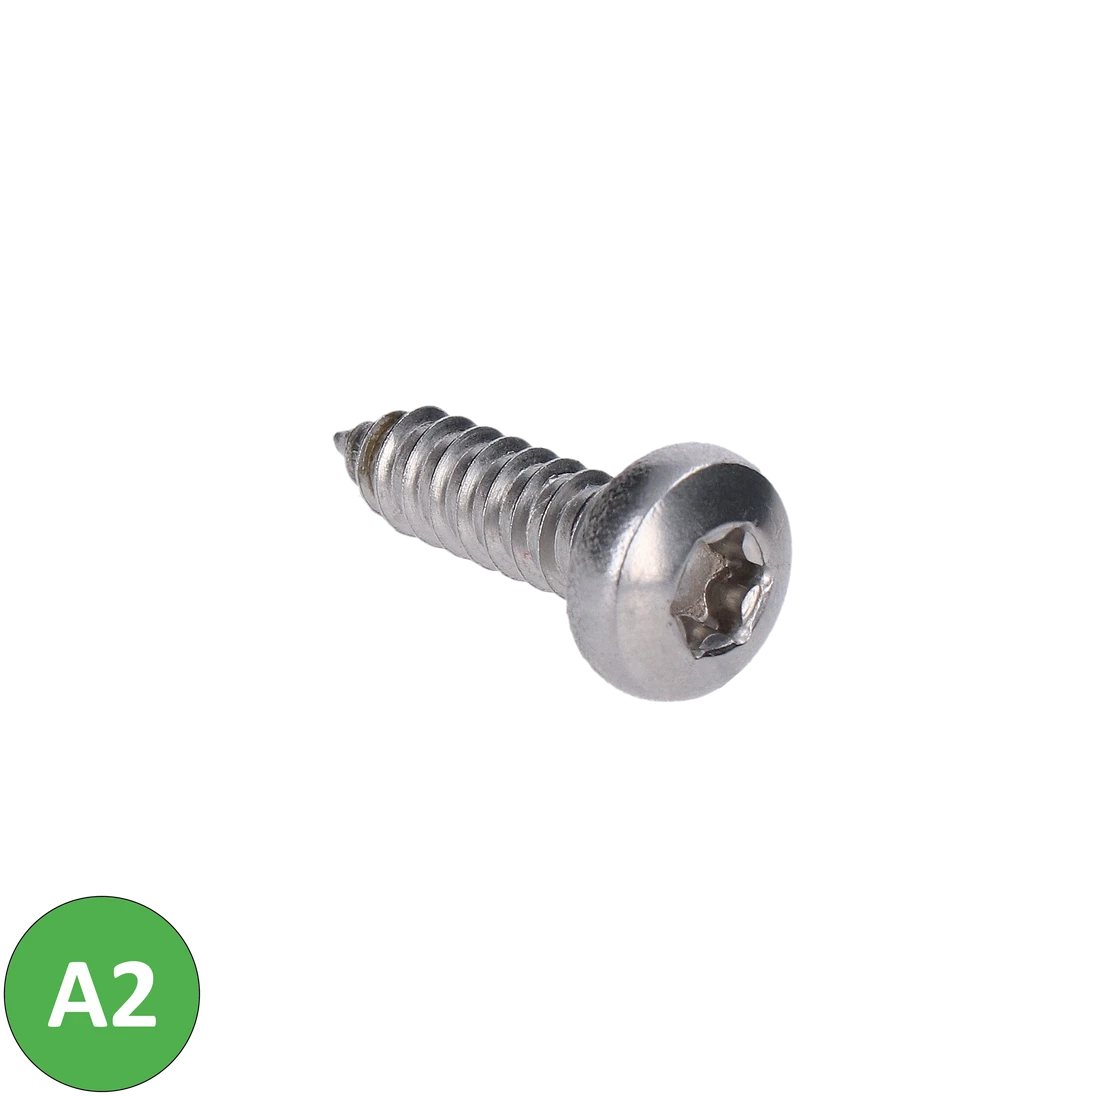 Nerezová skrutka samorezná (6.3x22mm) polguľatá  hlava, TX30, DIN7981C/A2 /AISI304, balenie 500ks, ISO 14585